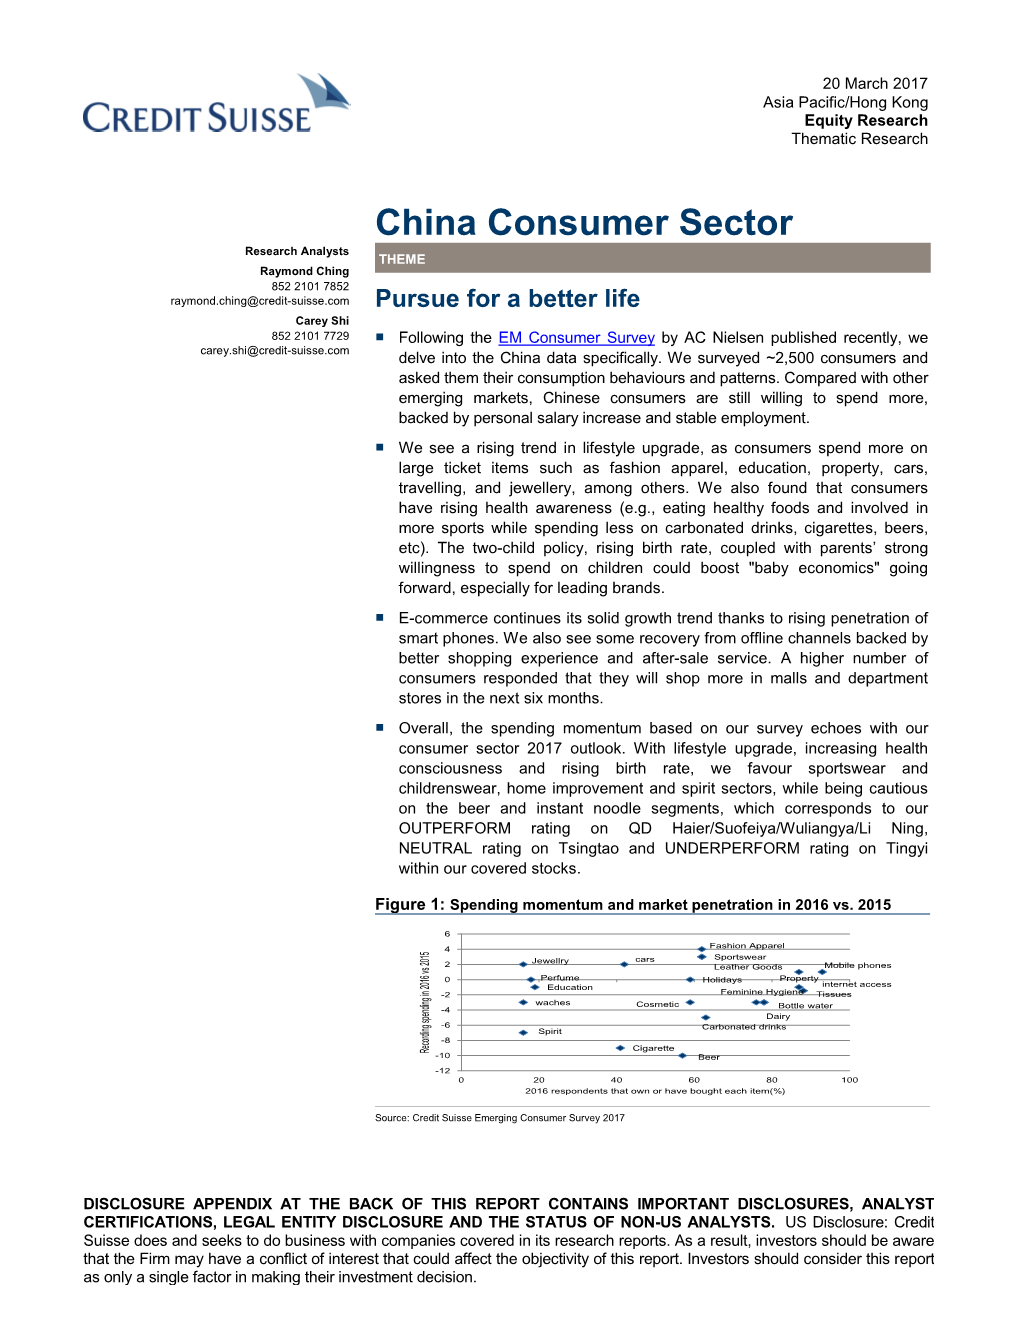 China Consumer Sector